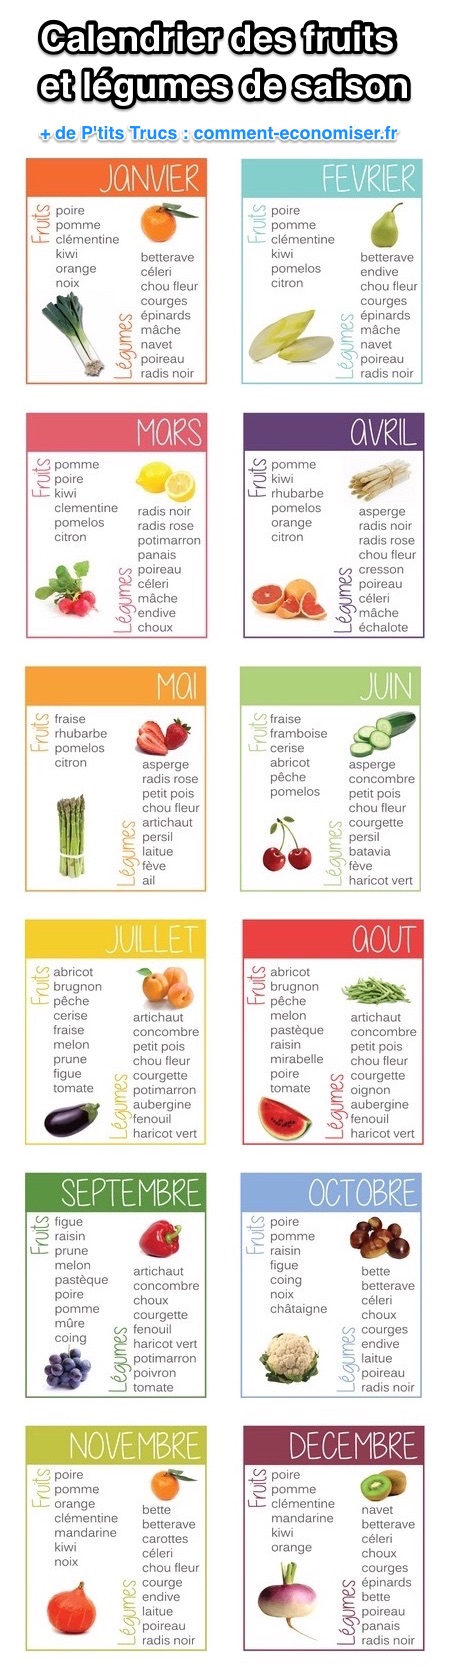 El calendari de fruites i verdures de temporada mes a mes